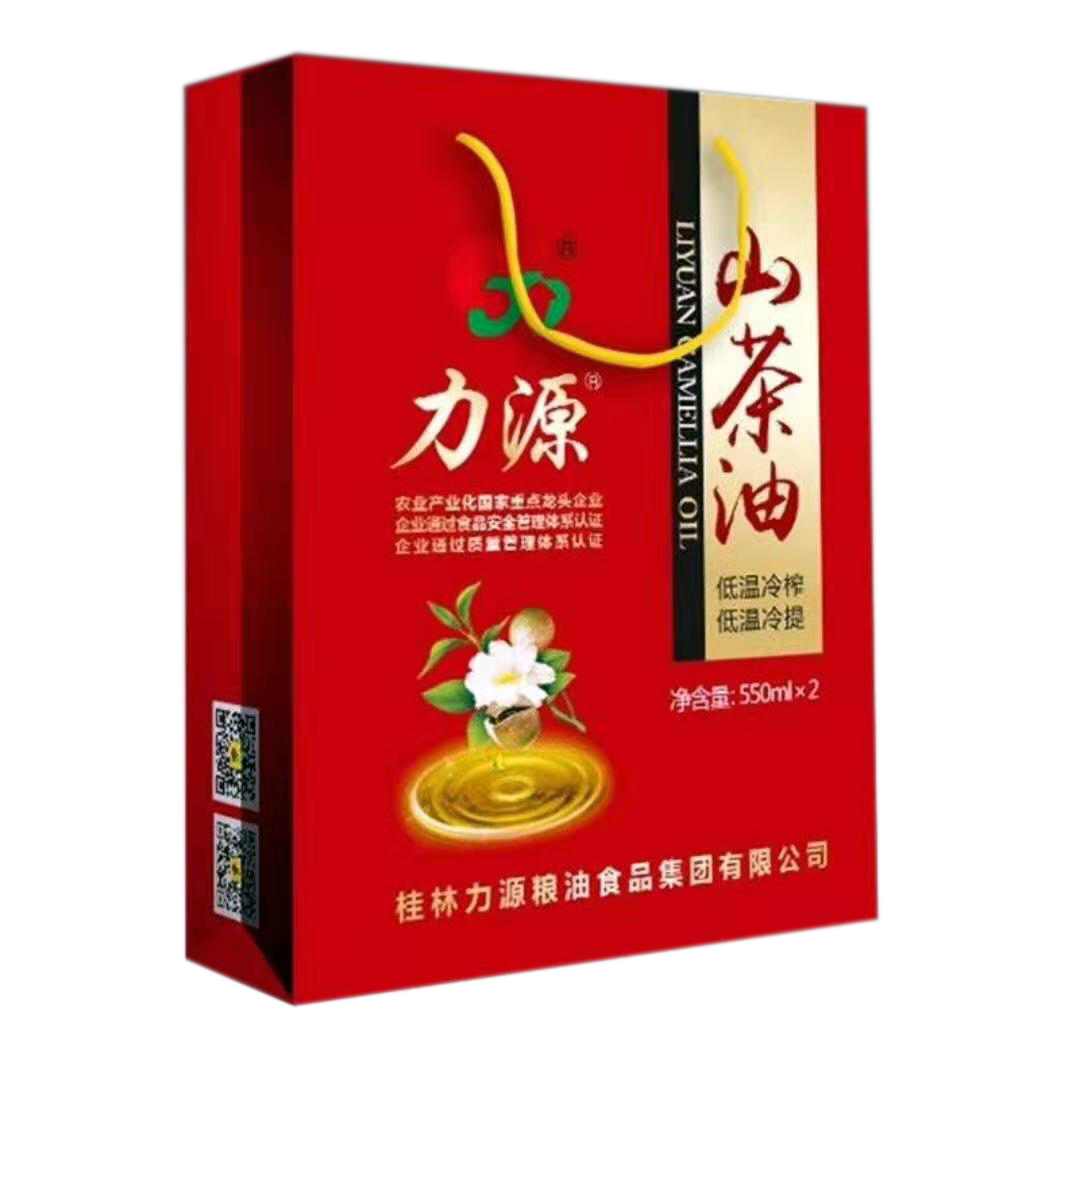 山茶油双瓶礼盒